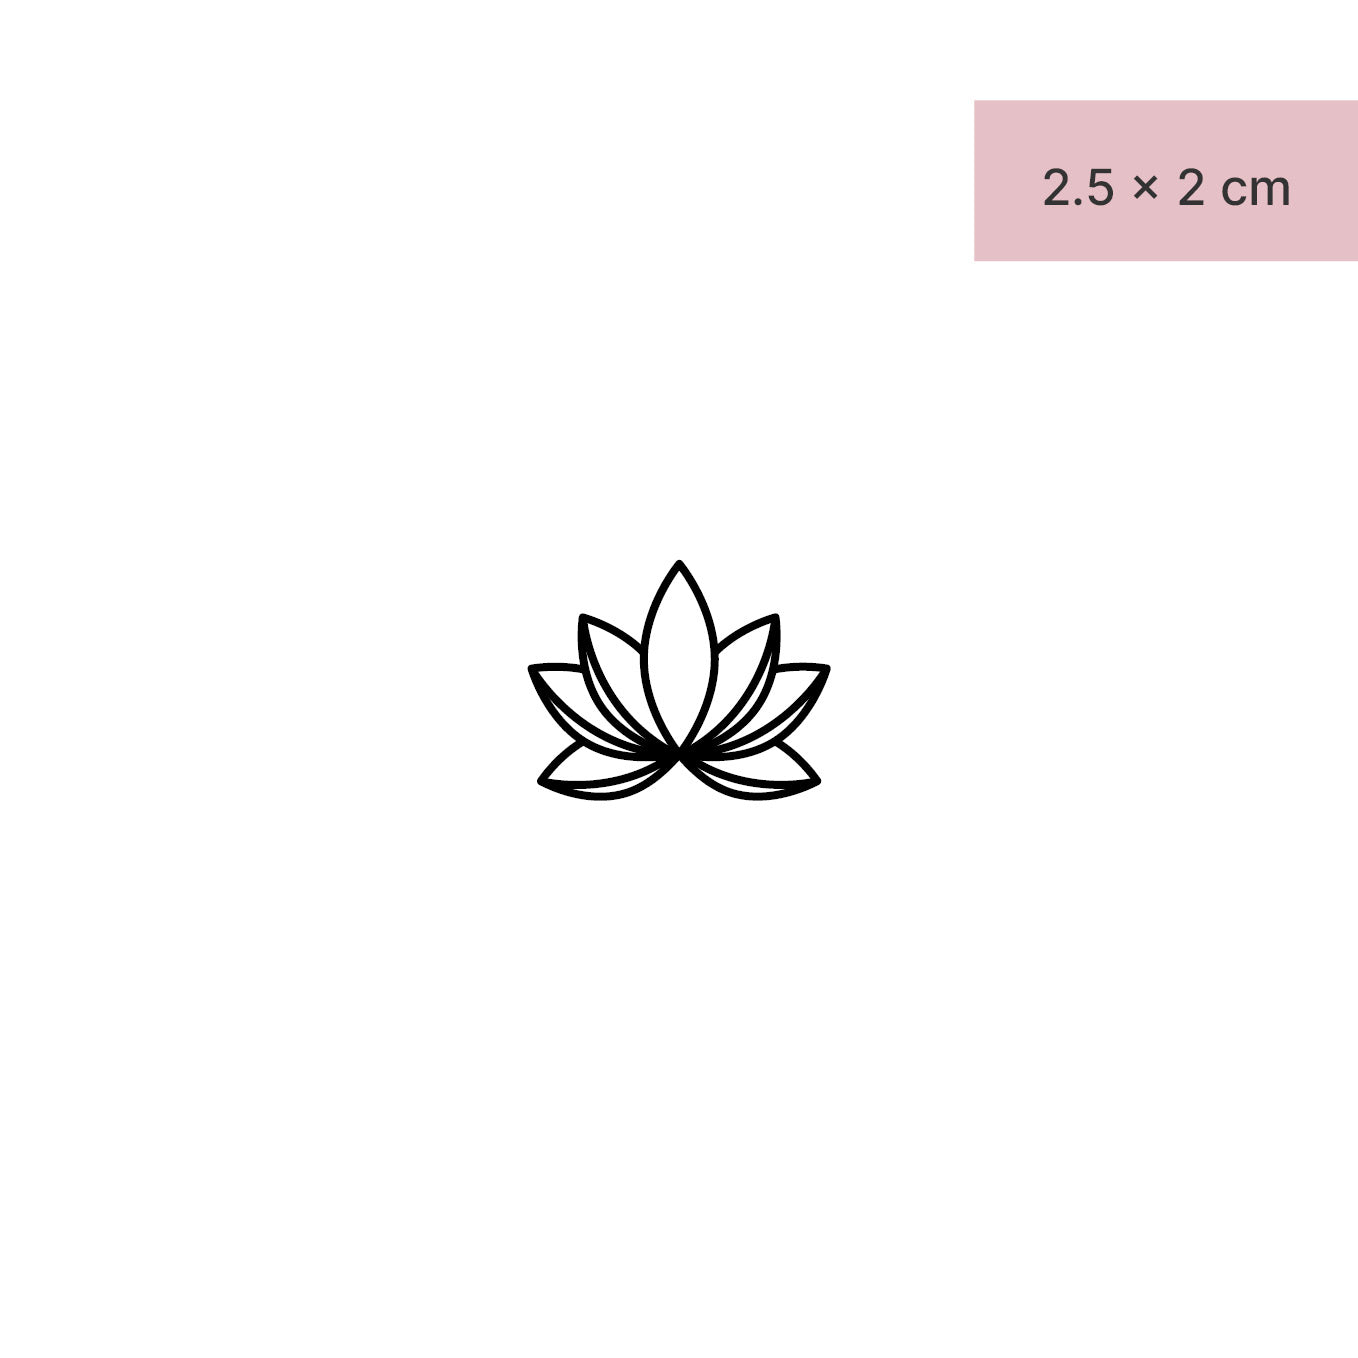 Symmetrische Lotusblume Tattoo von minink, der Marke für temporäre Tattoos.